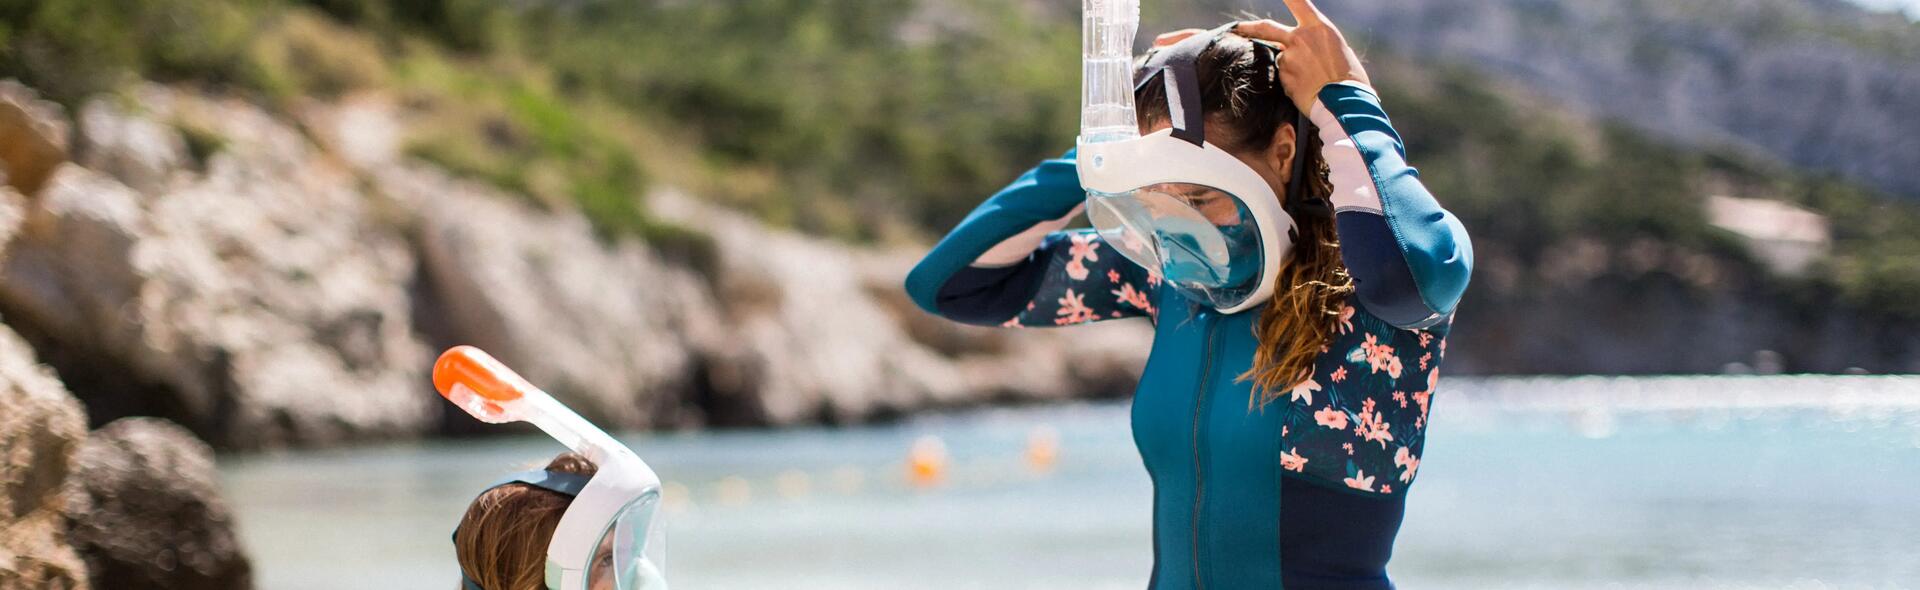 Comportamento corretto durante lo snorkeling: rispettiamo il mare! | DECATHLON